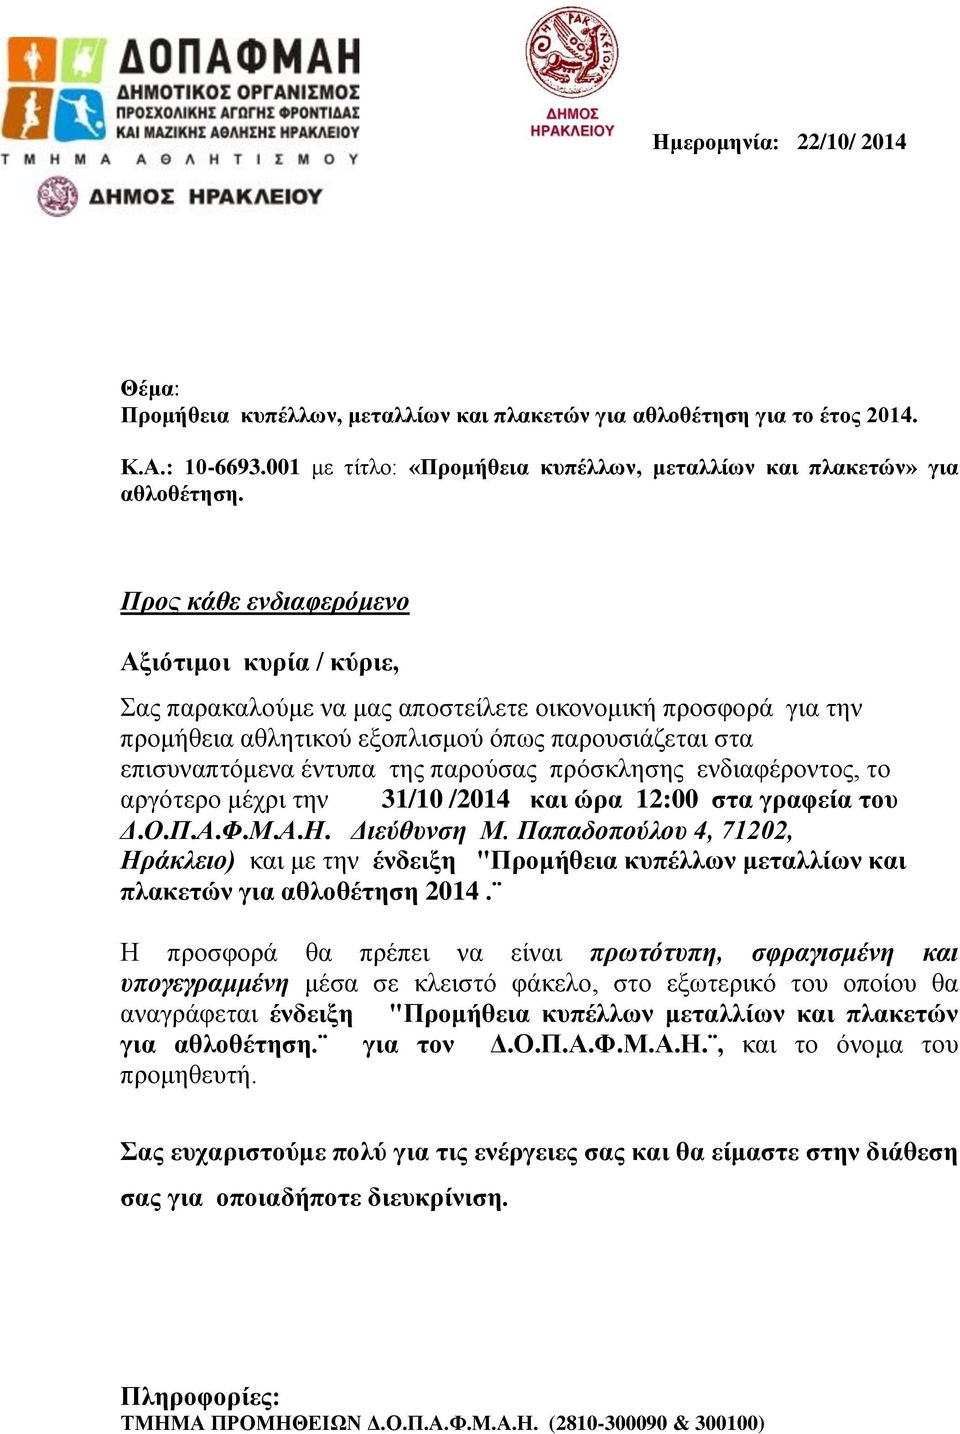 Παπαδοπούλου 4, 71202, Ηράκλειο) και με την ένδειξη "Προμήθεια κυπέλλων μεταλλίων και πλακετών για αθλοθέτηση 2014.